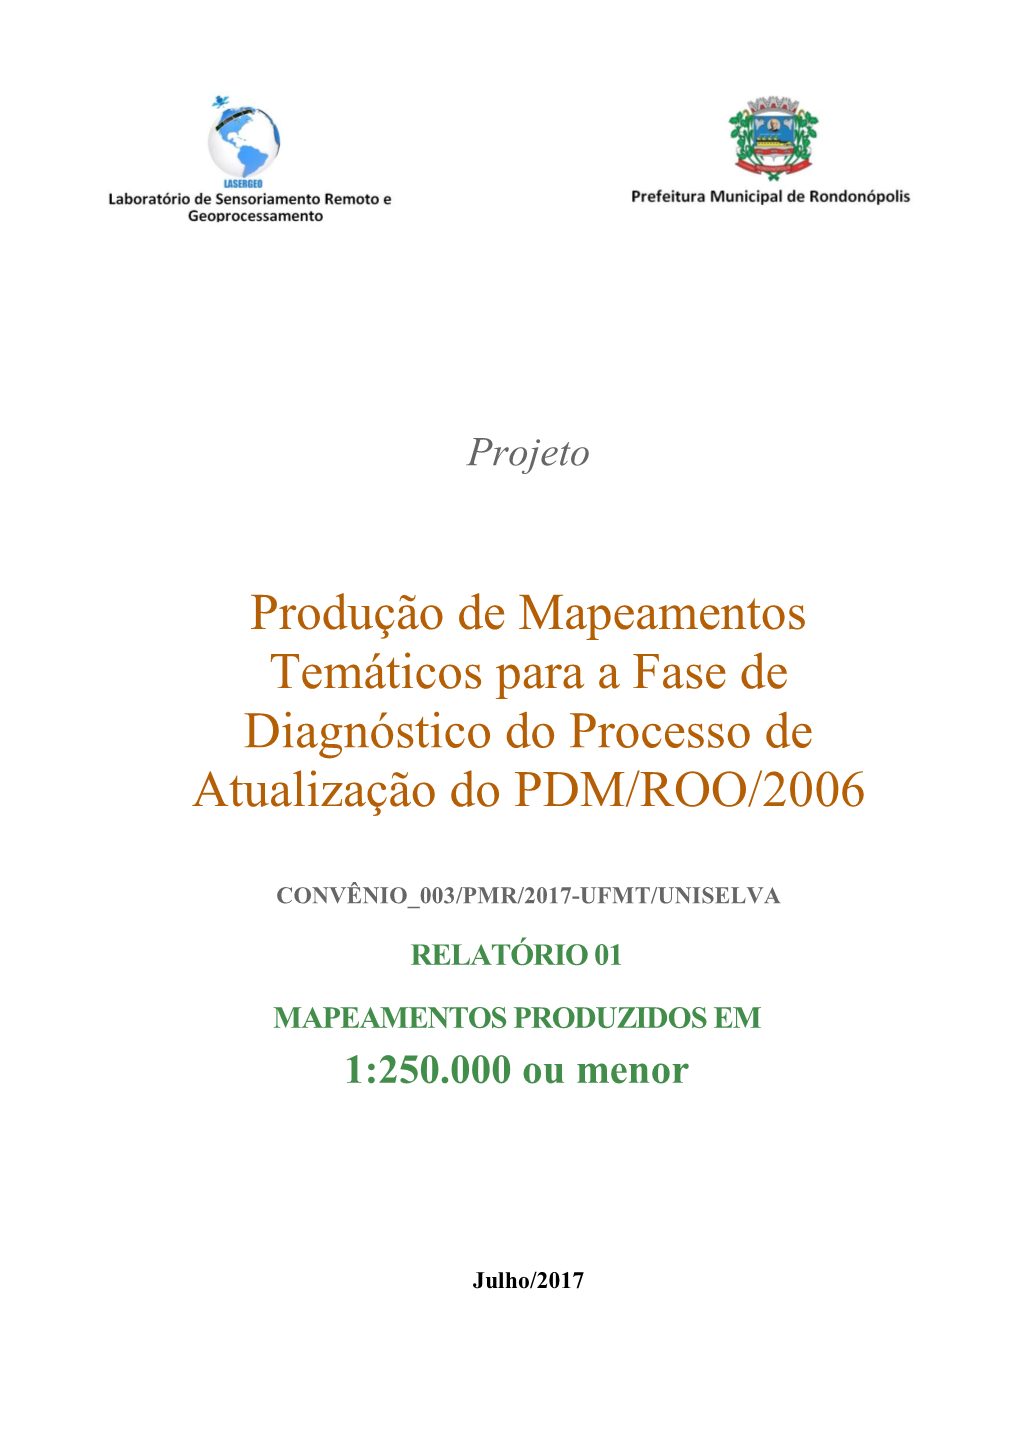 Produção De Mapeamentos Temáticos Para a Fase De Diagnóstico Do Processo De Atualização Do PDM/ROO/2006